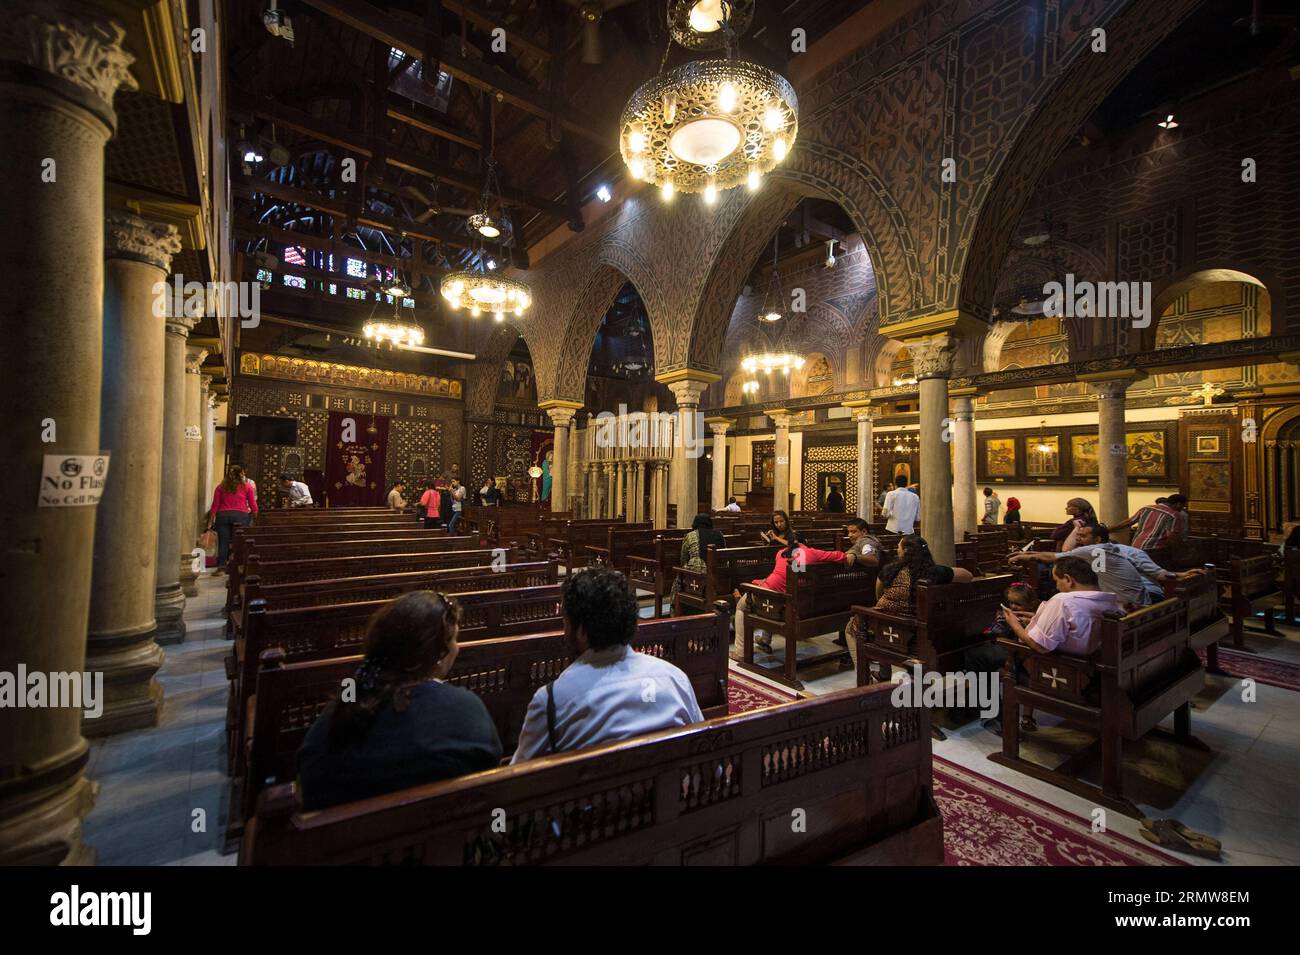 Menschen werden in der hängenden koptischen Kirche in Kairo, Ägypten, am 12. Oktober 2014 gesehen. Die Jahrhunderte alte Kirche wurde am 11. Oktober nach 16 Jahren Renovierung wieder eröffnet. ÄGYPTEN-KAIRO-RELIGION-KOPTISCHE KIRCHE PanxChaoyue PUBLICATIONxNOTxINxCHN Berühmtheiten sind Seen in der hängenden koptischen Kirche in Kairo Ägypten OCT 12 2014 die Jahrhunderte alte Kirche, die AM OCT 11 nach 16 Jahren Renovierung wieder eröffnet wurde Ägypten Religion Koptische Kirche PUBLICATIONxNOTxINxCHN Stockfoto